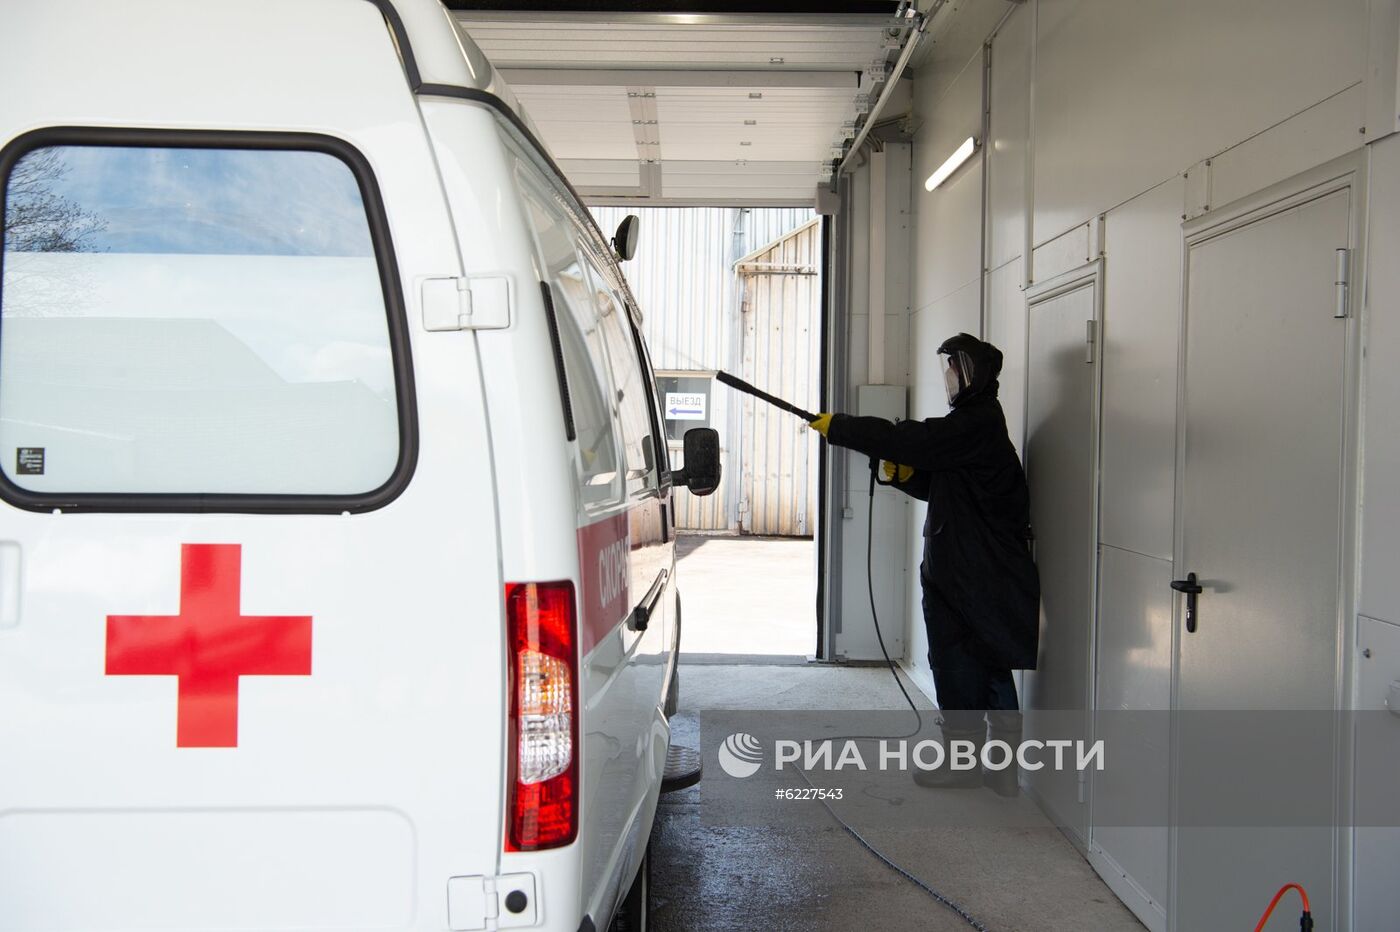 Коронавирусный стационар открыт на базе госпиталя медсанчасти МВД России по Москве